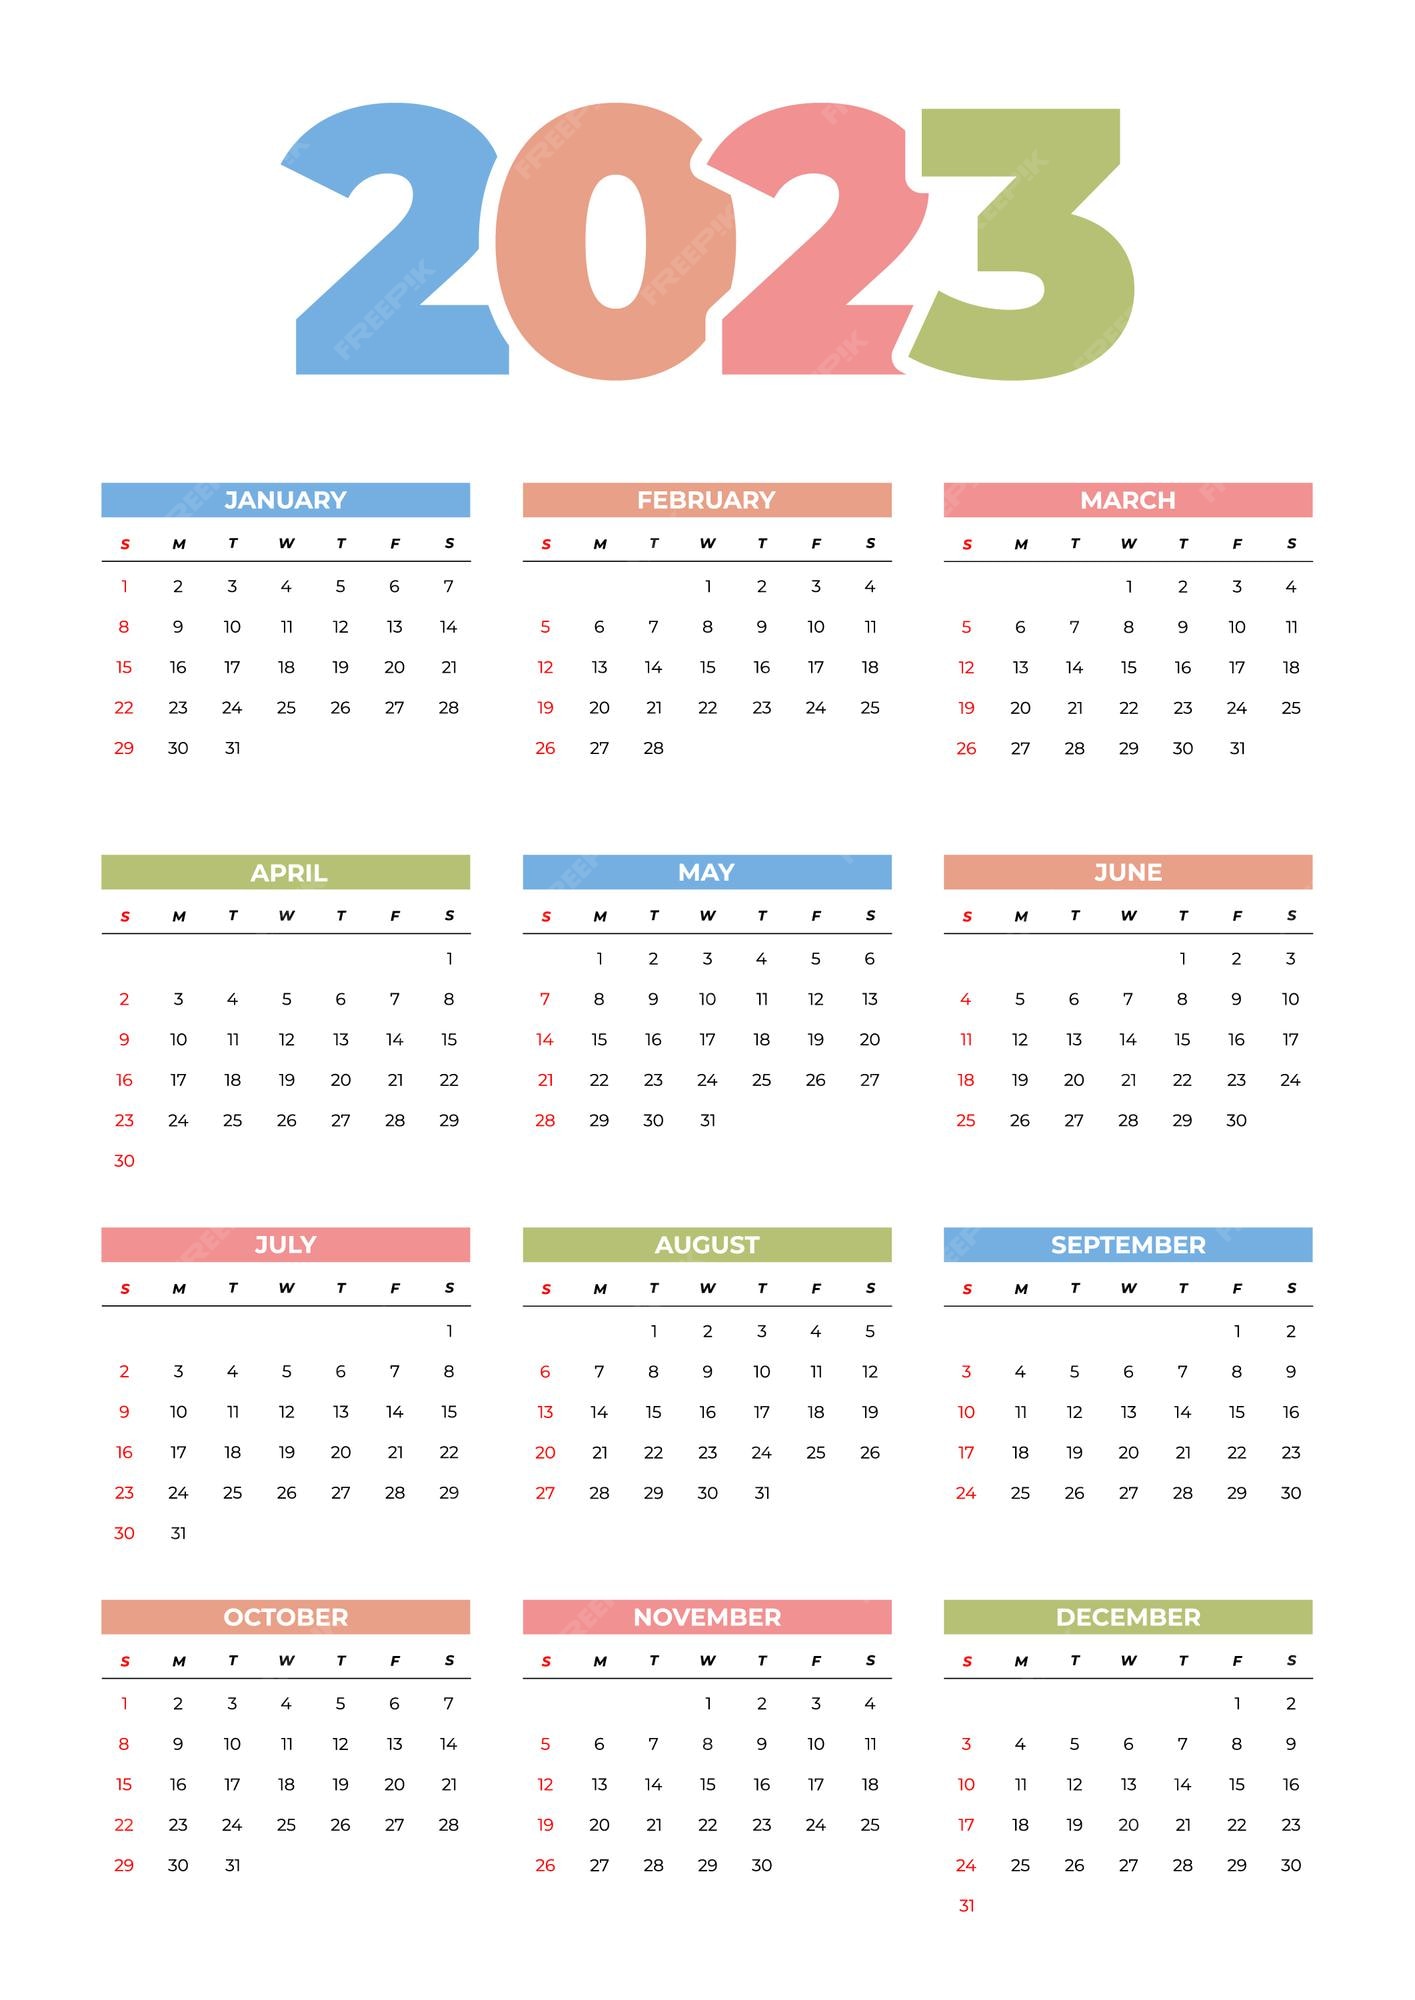 Calendar 2023 Template Excel Get Calendar 2023 Update - Riset